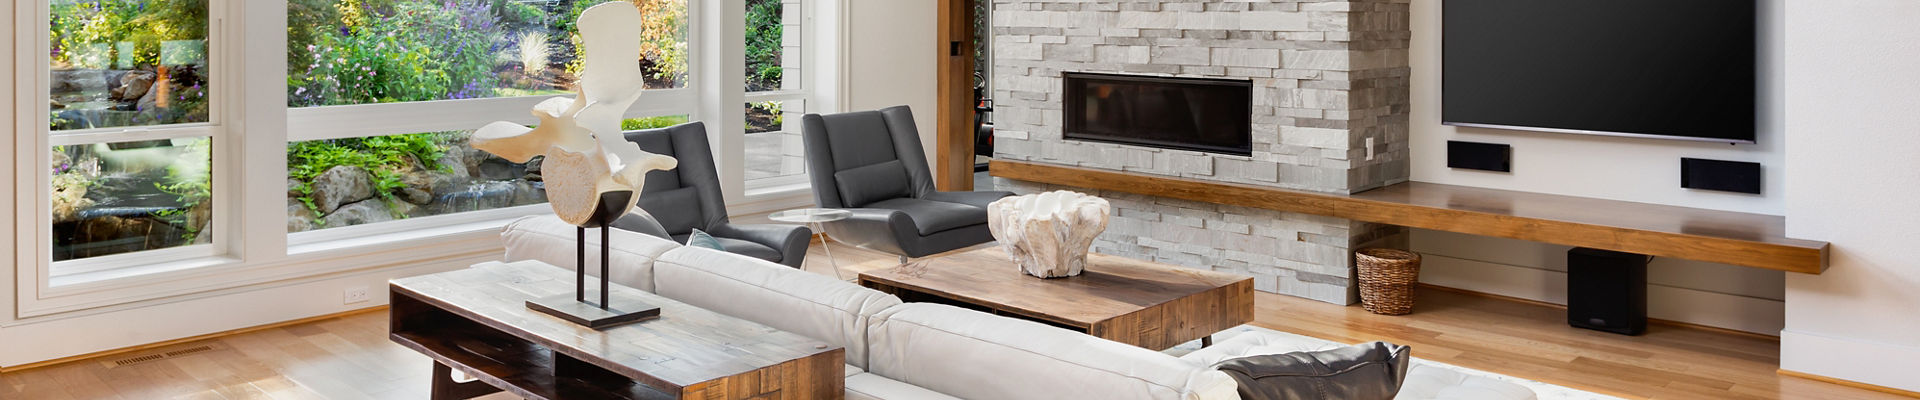 Sofá moderno en la sala de estar con piso de madera